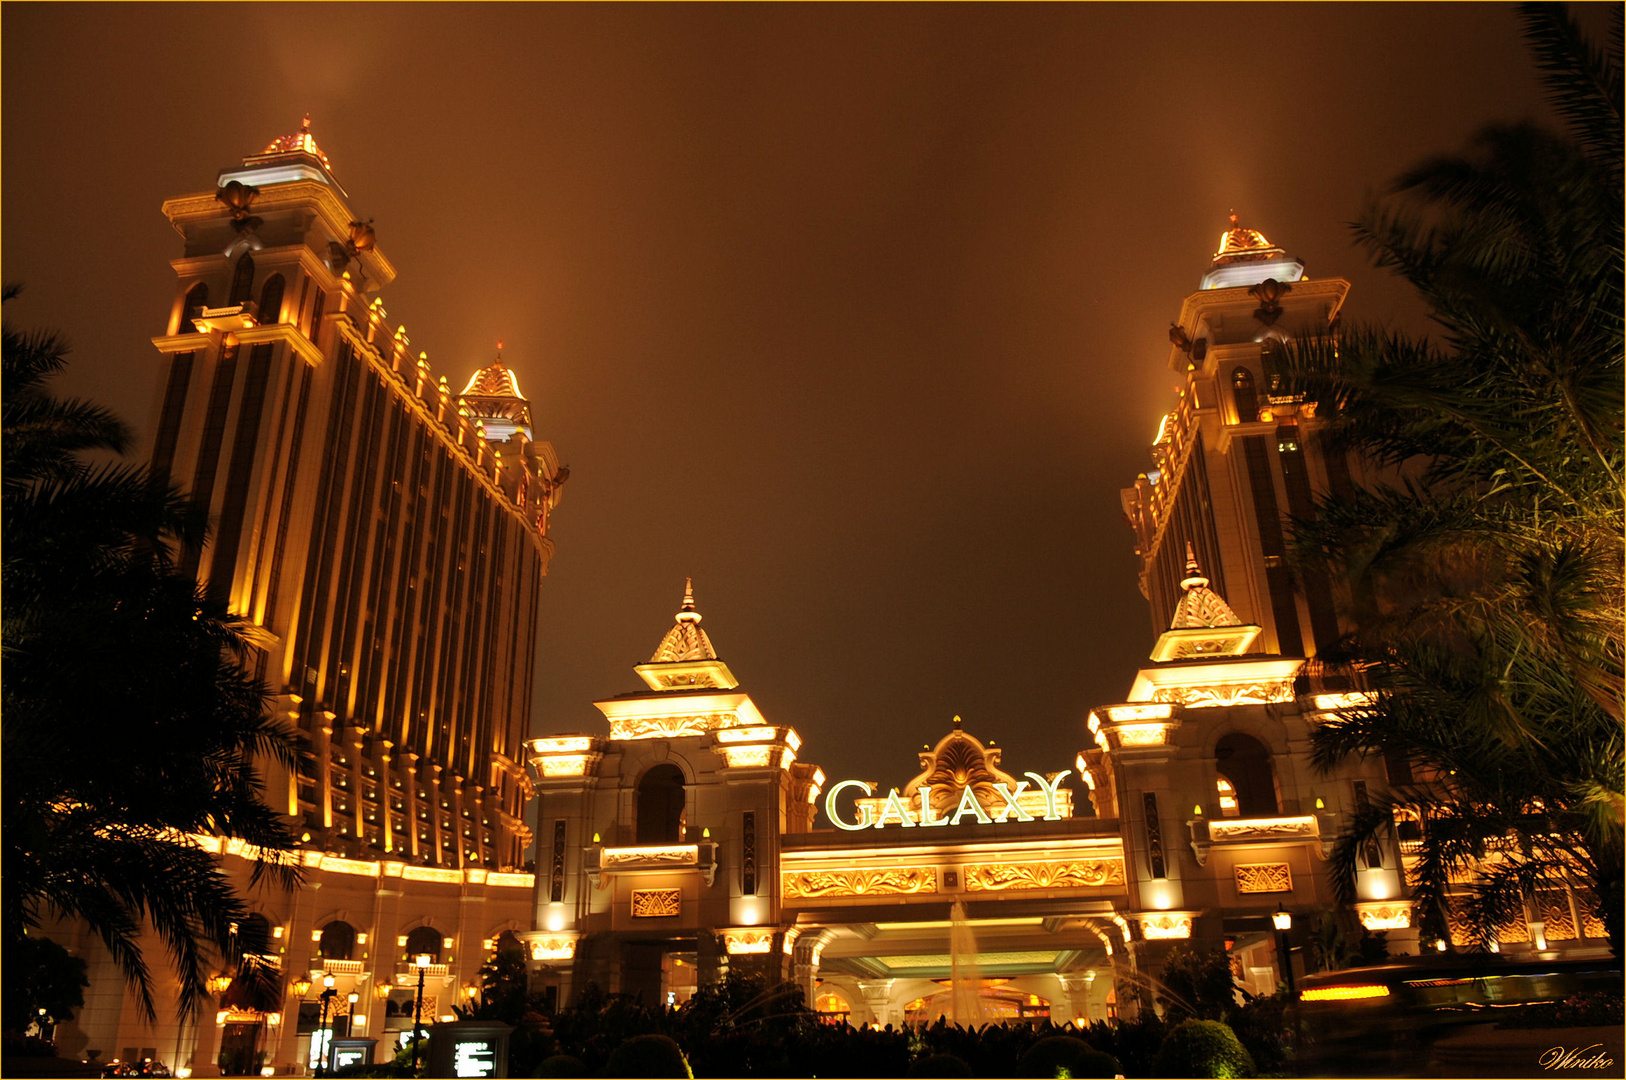 Galaxy Hotel in Macau